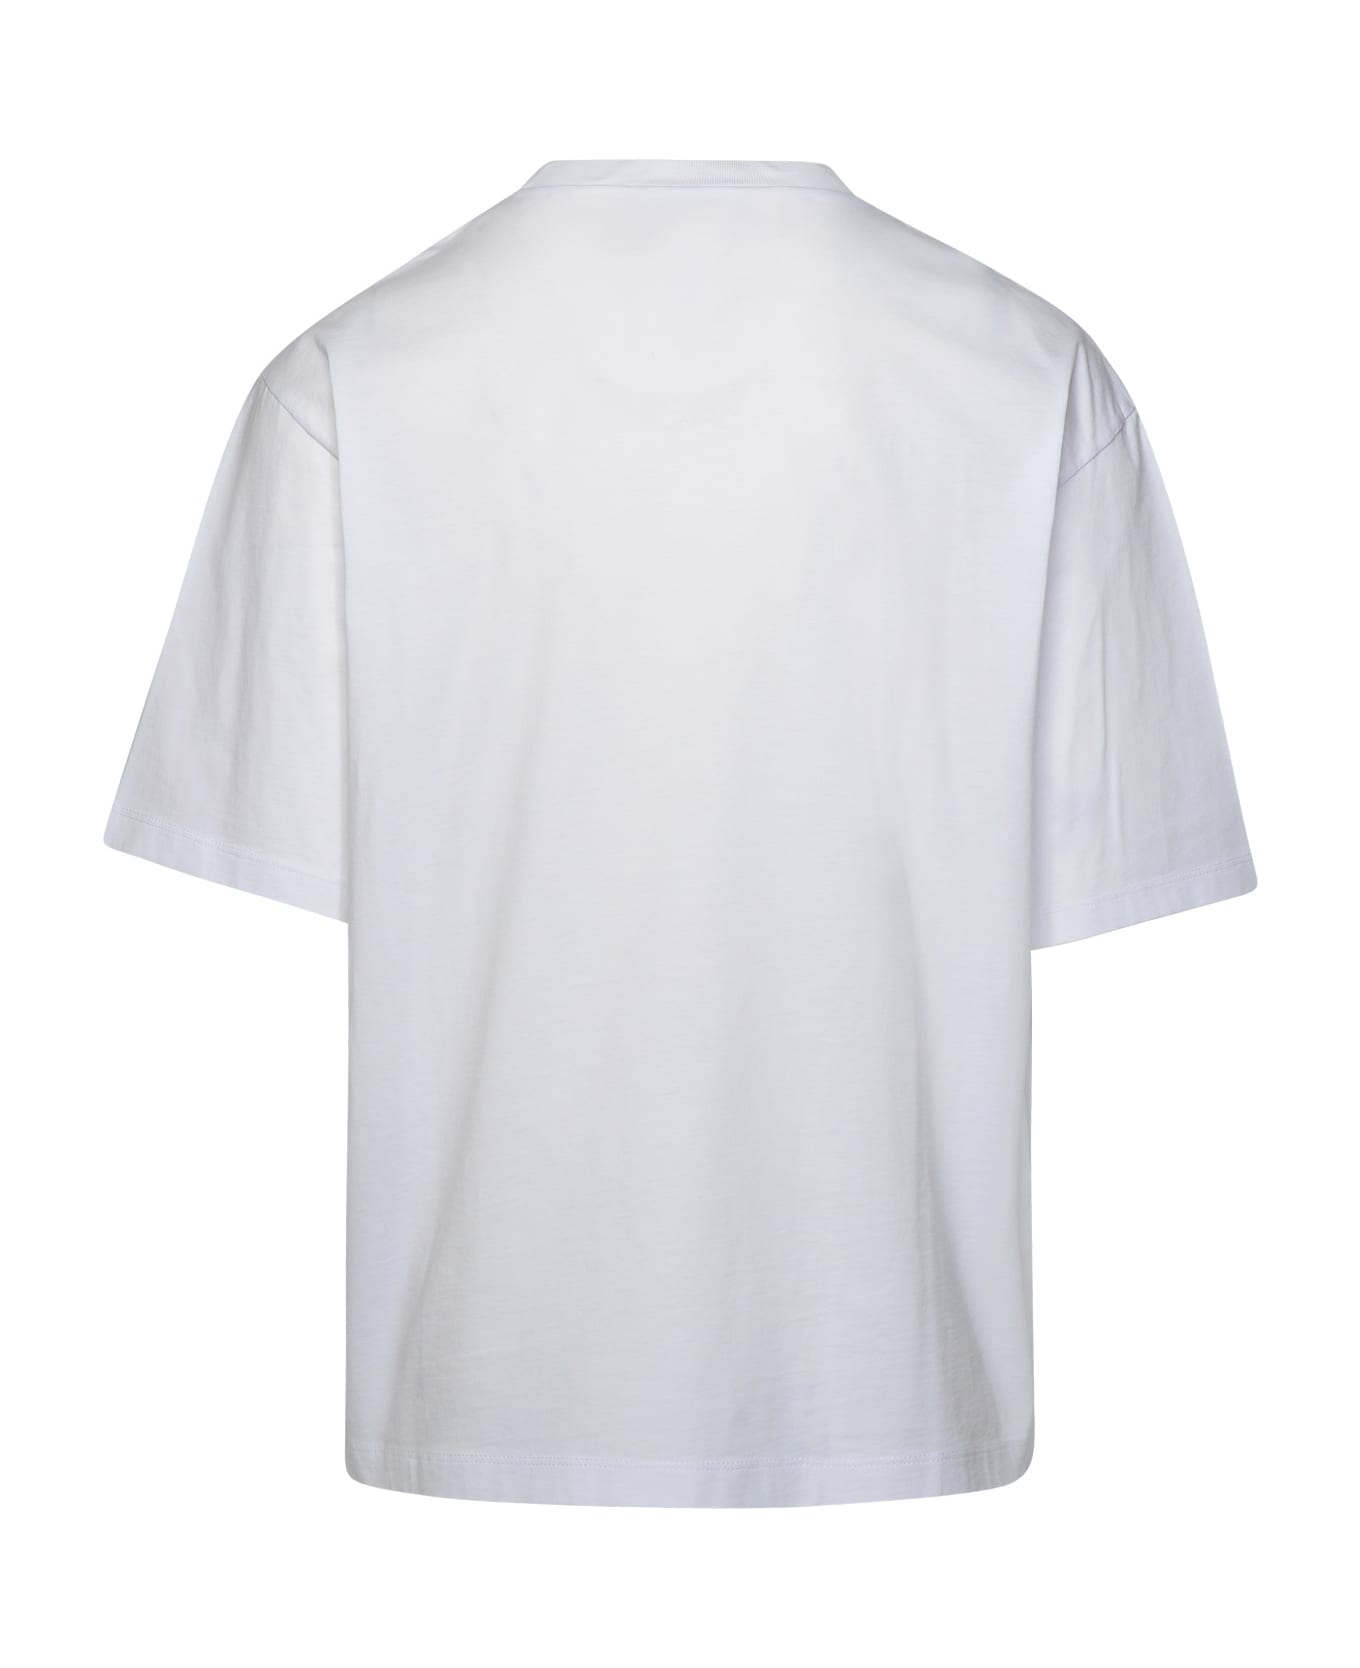 Dsquared2 Logo T-shirt - White シャツ